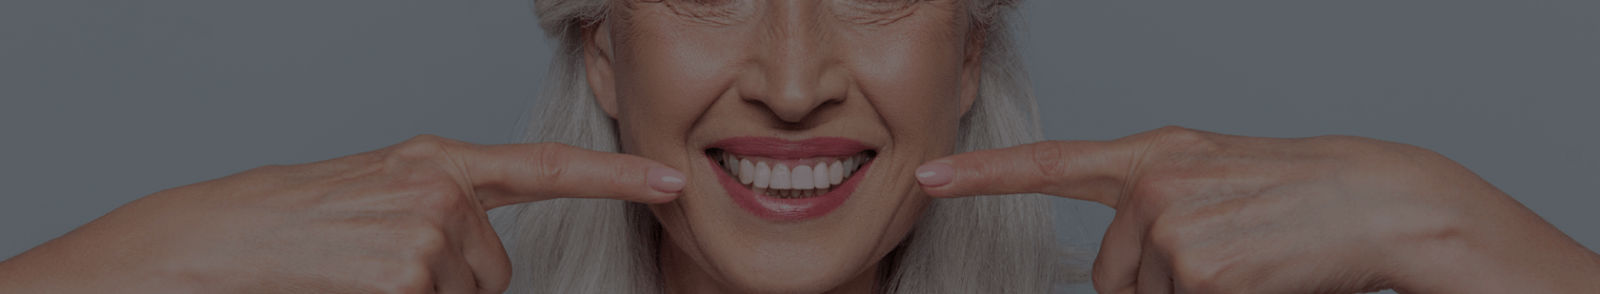 صرير الأسنان – البروكسيسم